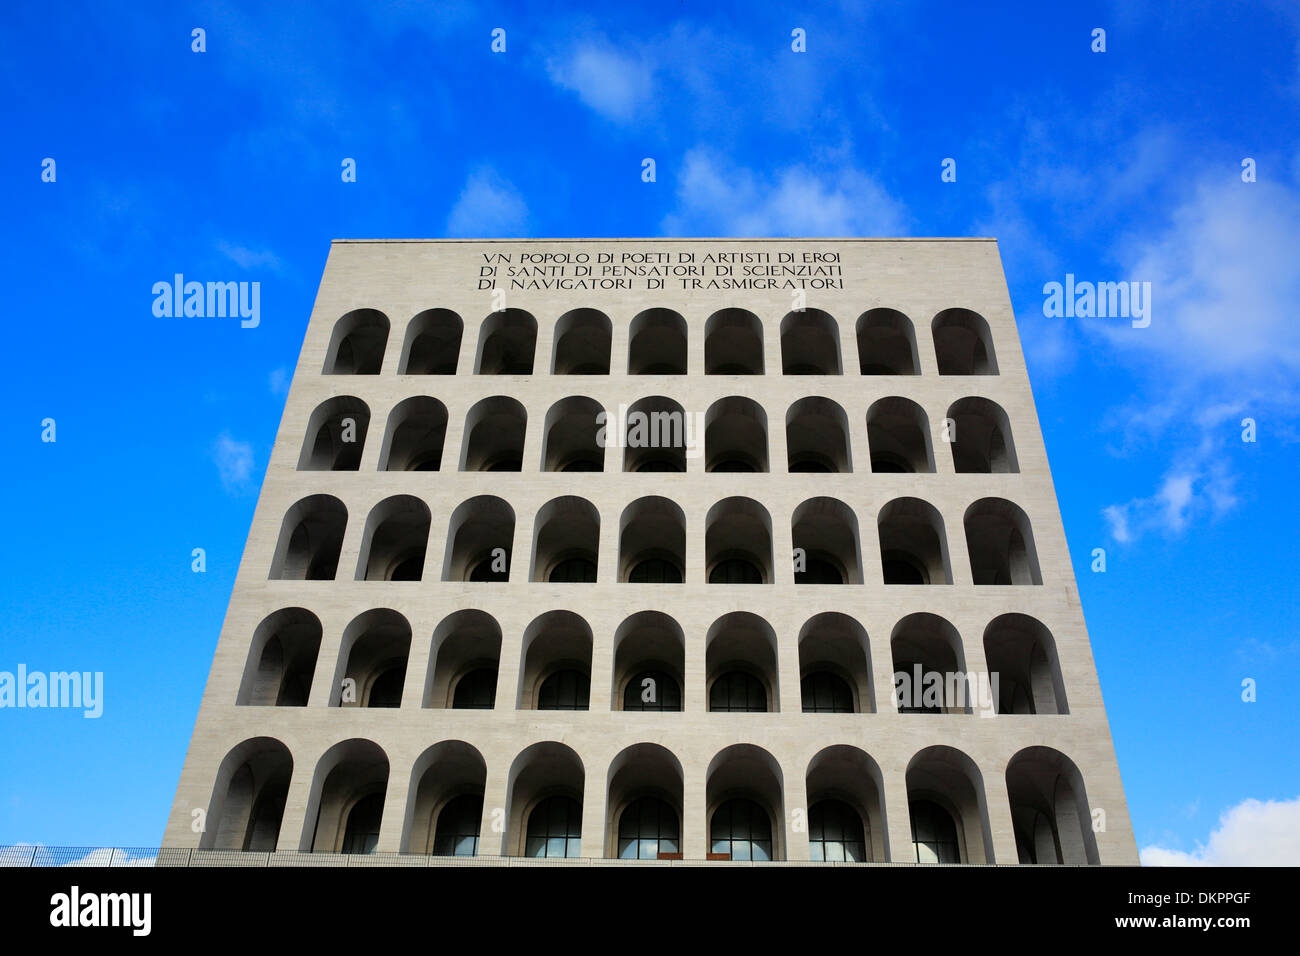 Palazzo della Civiltà Italiana (Colosseo Quadrato), EUR, Rome, Italie Banque D'Images